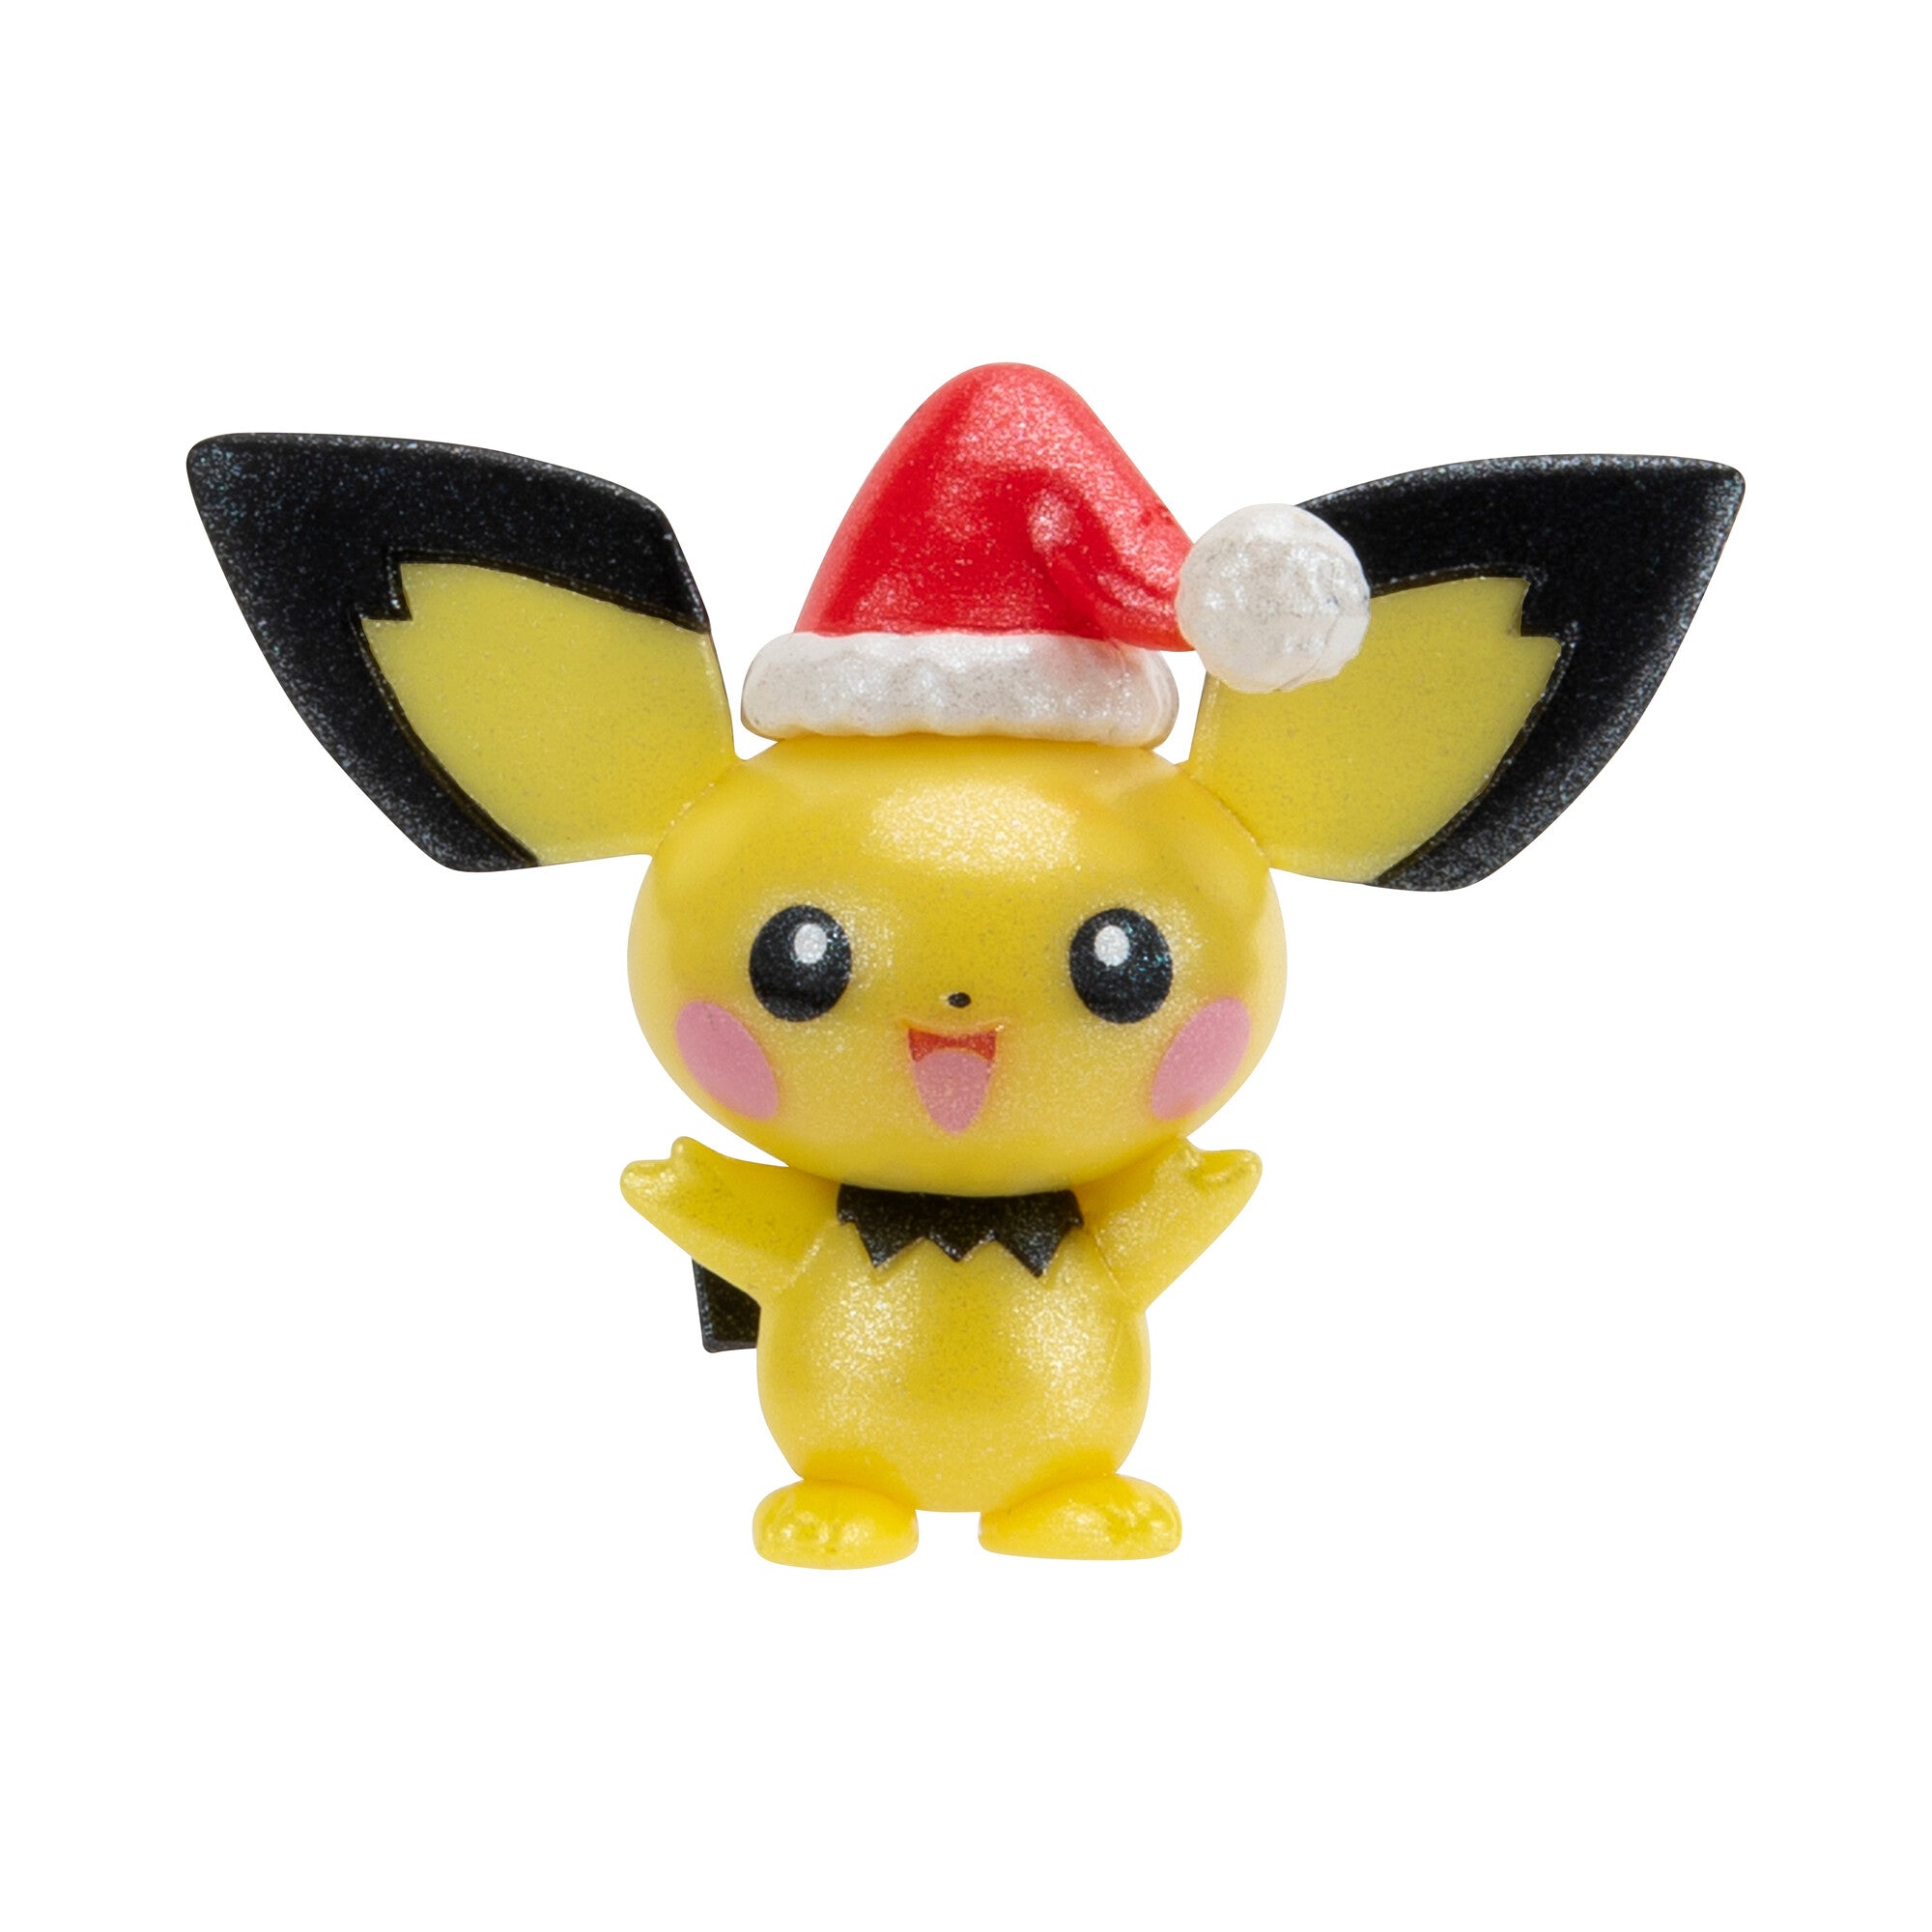 Pokemon Holiday Calendar: Calendario Con 24 Figuras Navidad 2023